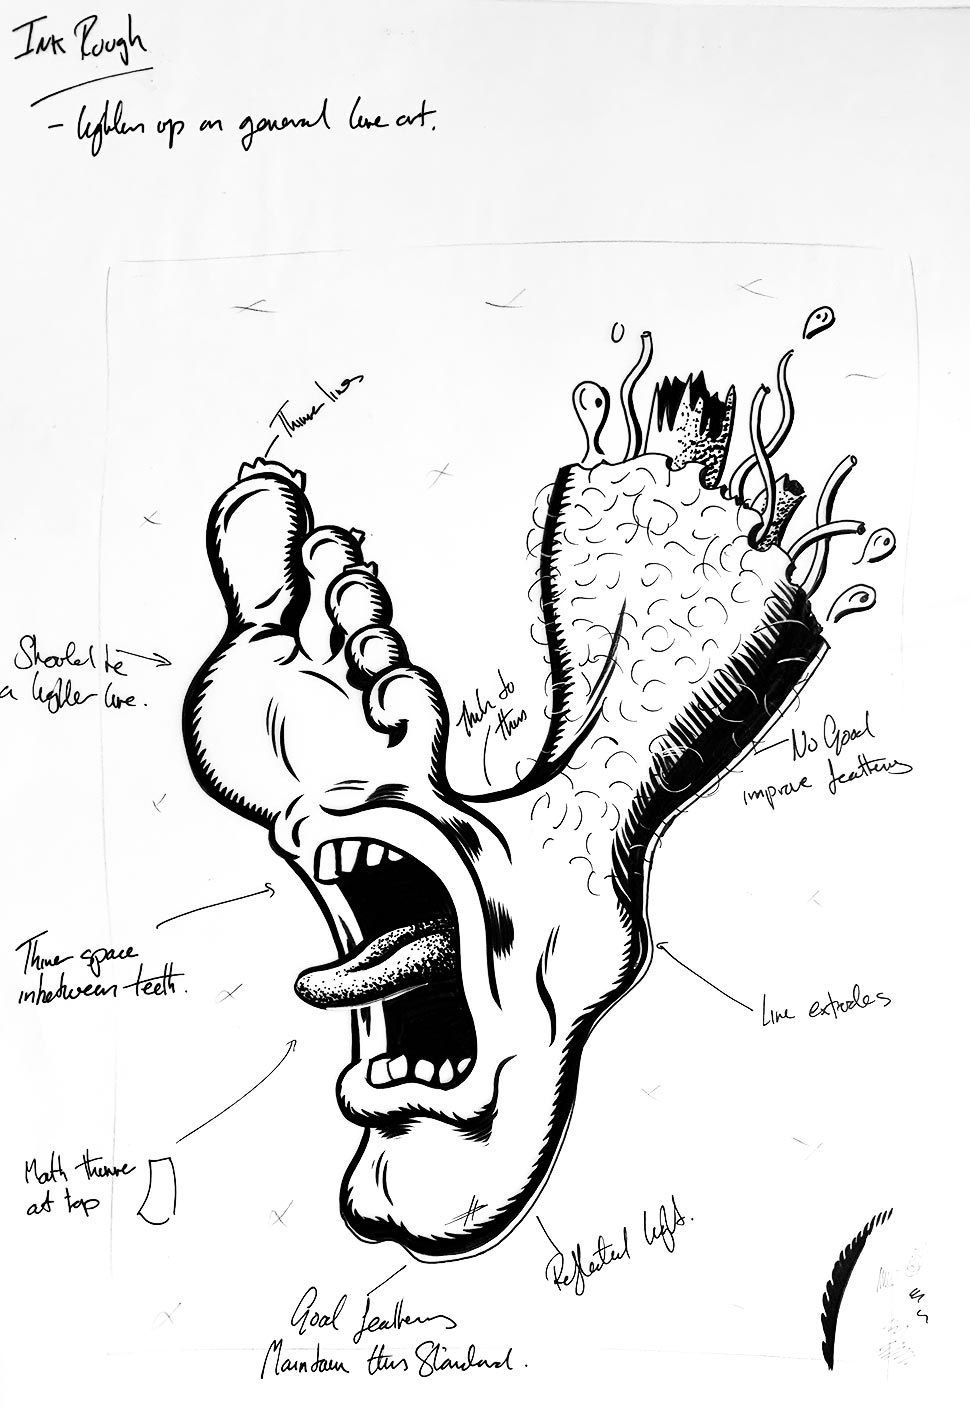 Screaming Foot - Inspired by Jim Phillips Santa Cruz Artwork